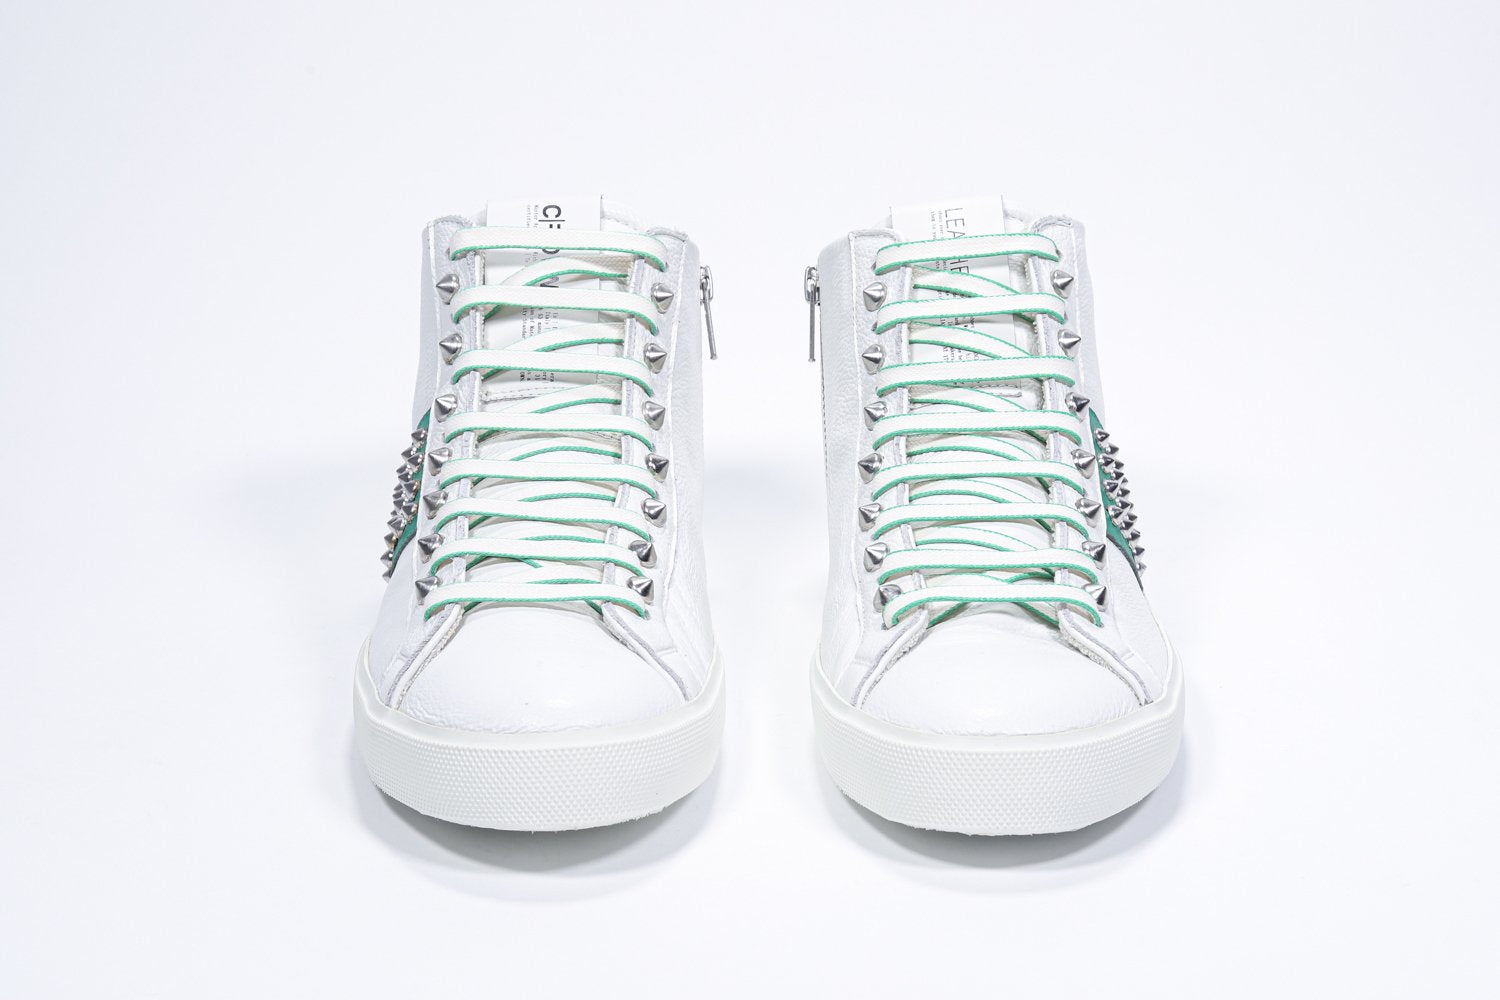 Vista frontale della mid top bianca e verde sneaker. Tomaia in pelle con borchie, zip interna e suola in gomma bianca.